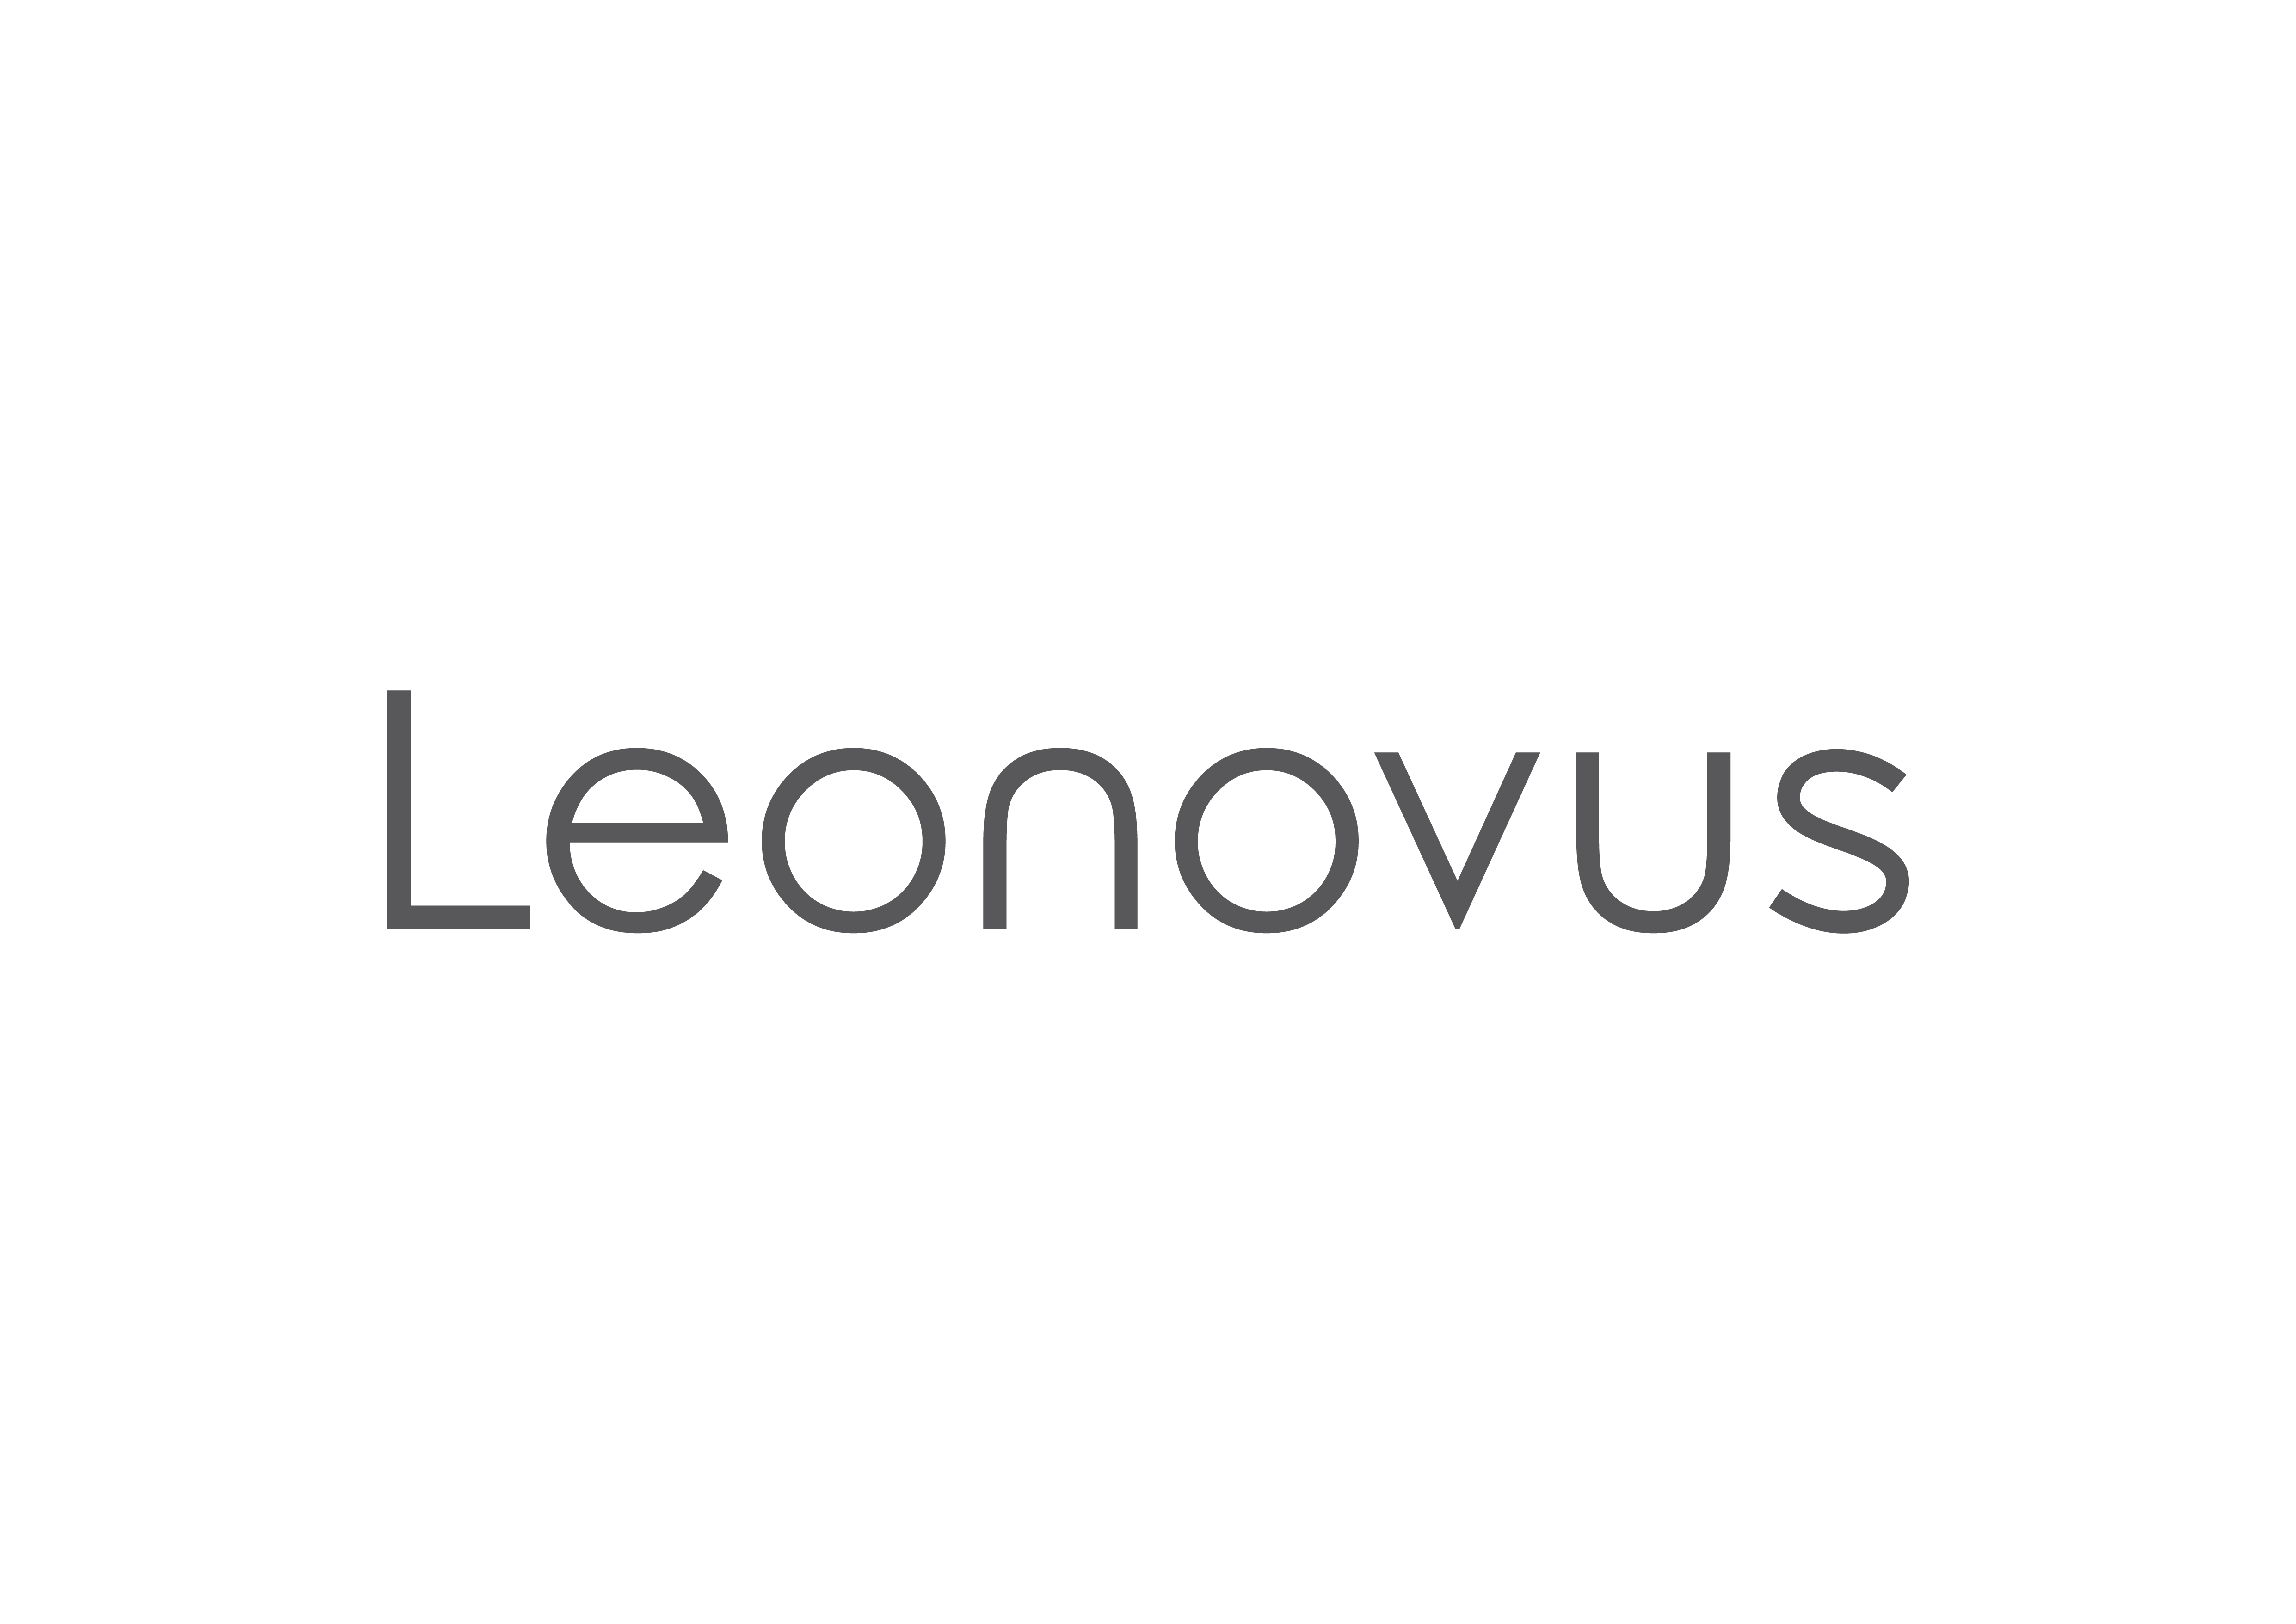 leonovus_i.png